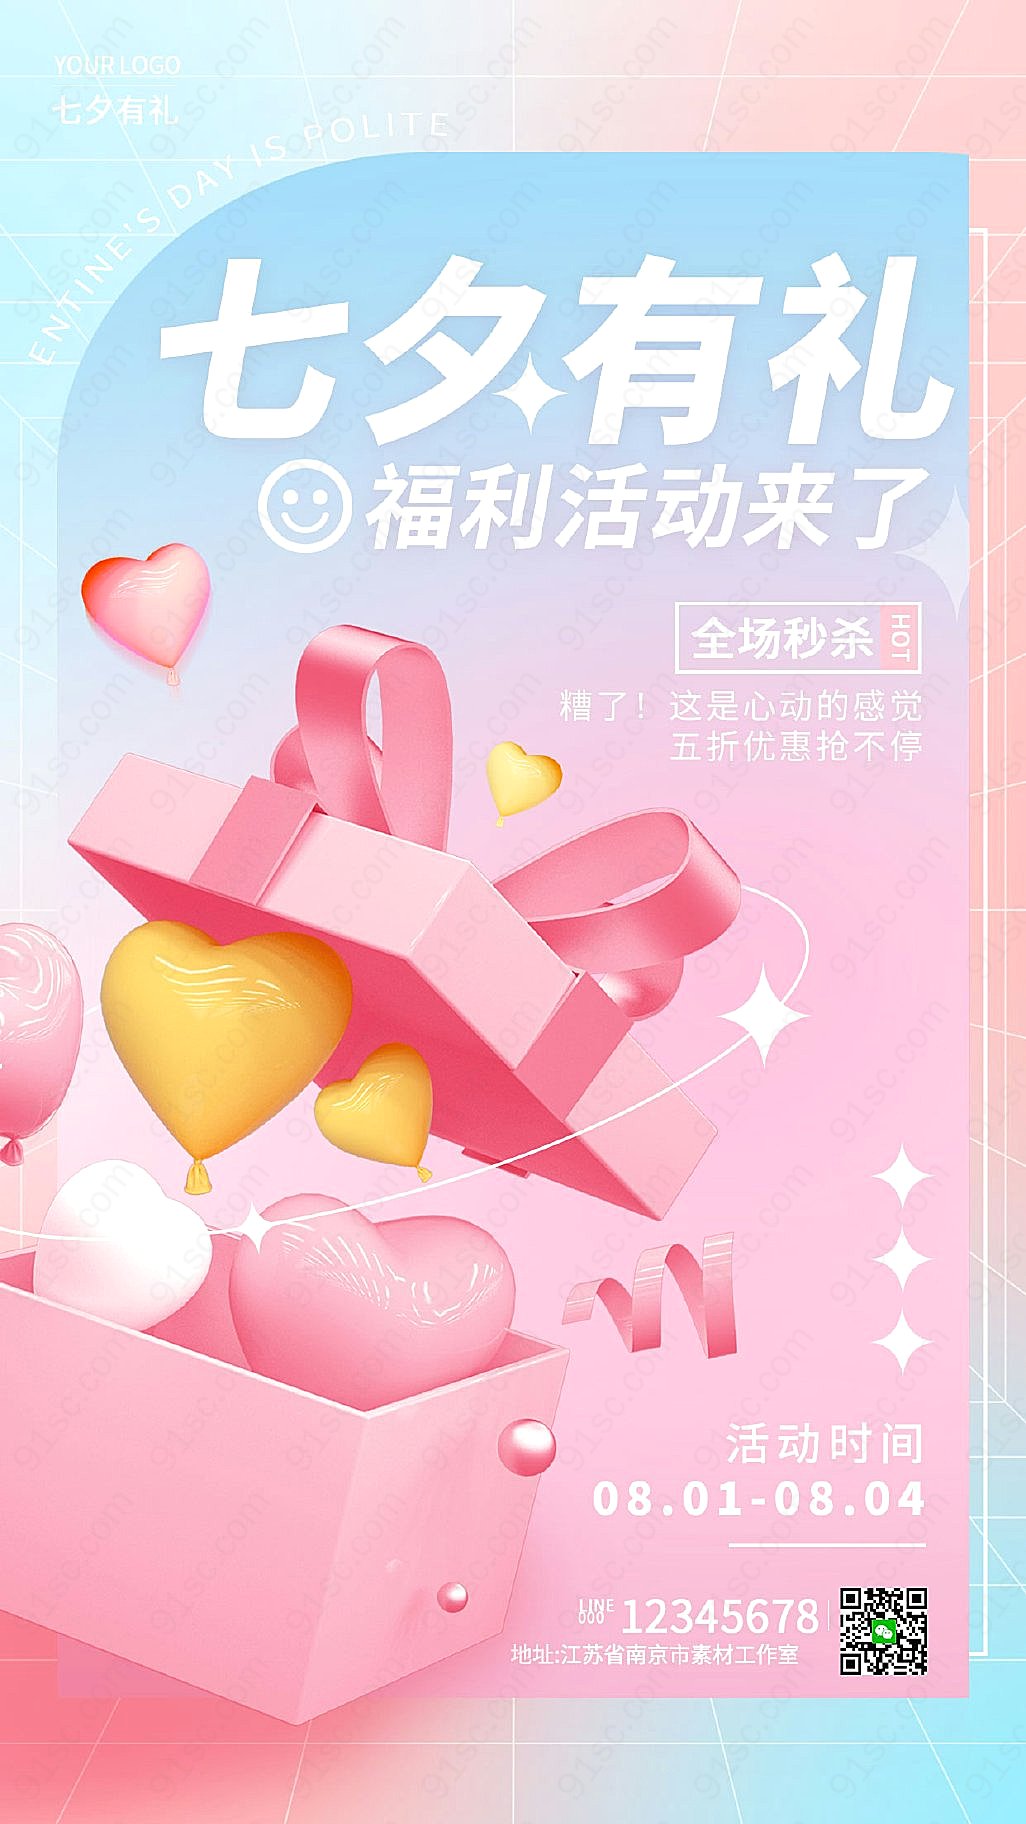 七夕节手机促销活动渐变颜色弥散风格设计宣传海报新媒体用图下载